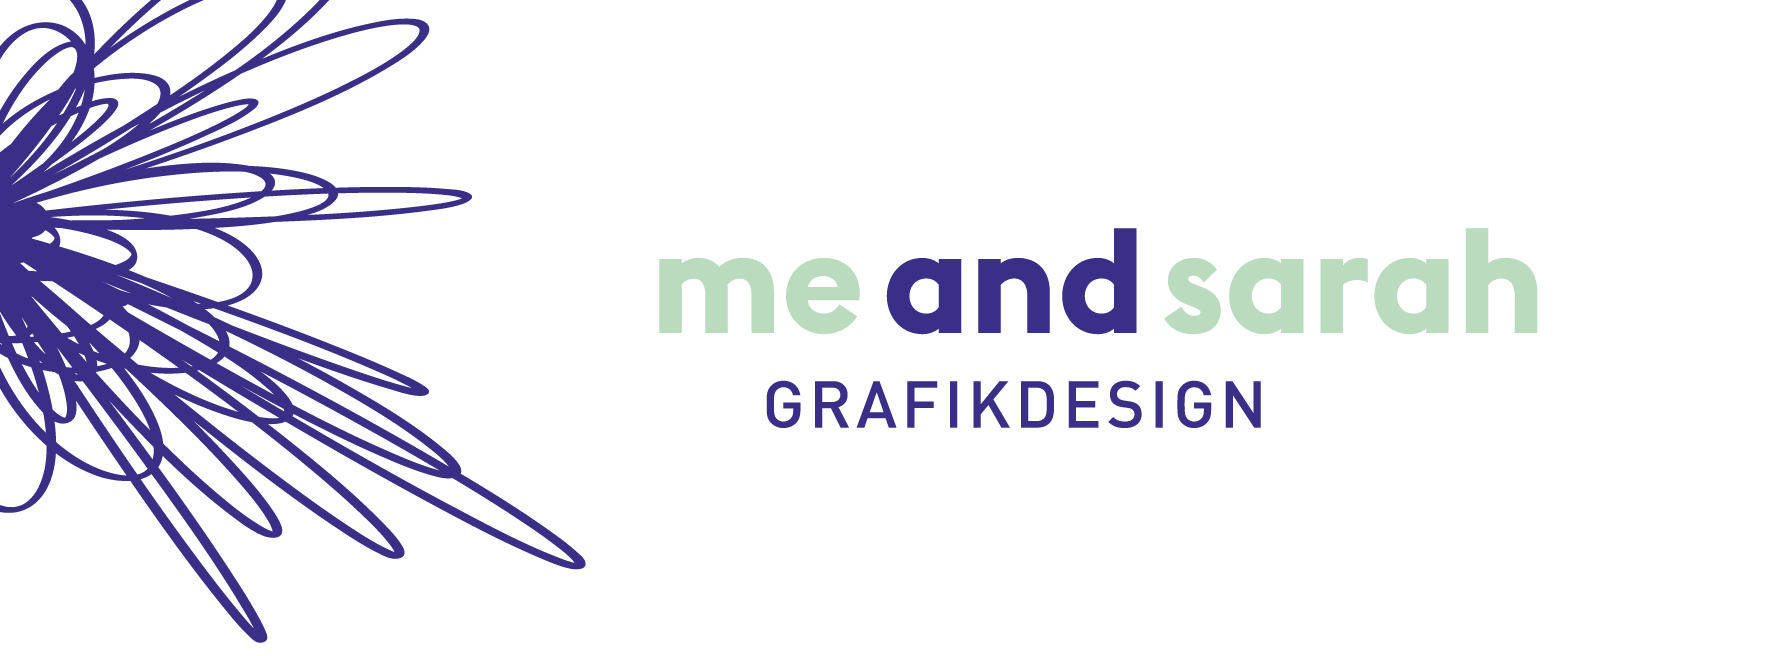 meandsarah – Grafikdesign